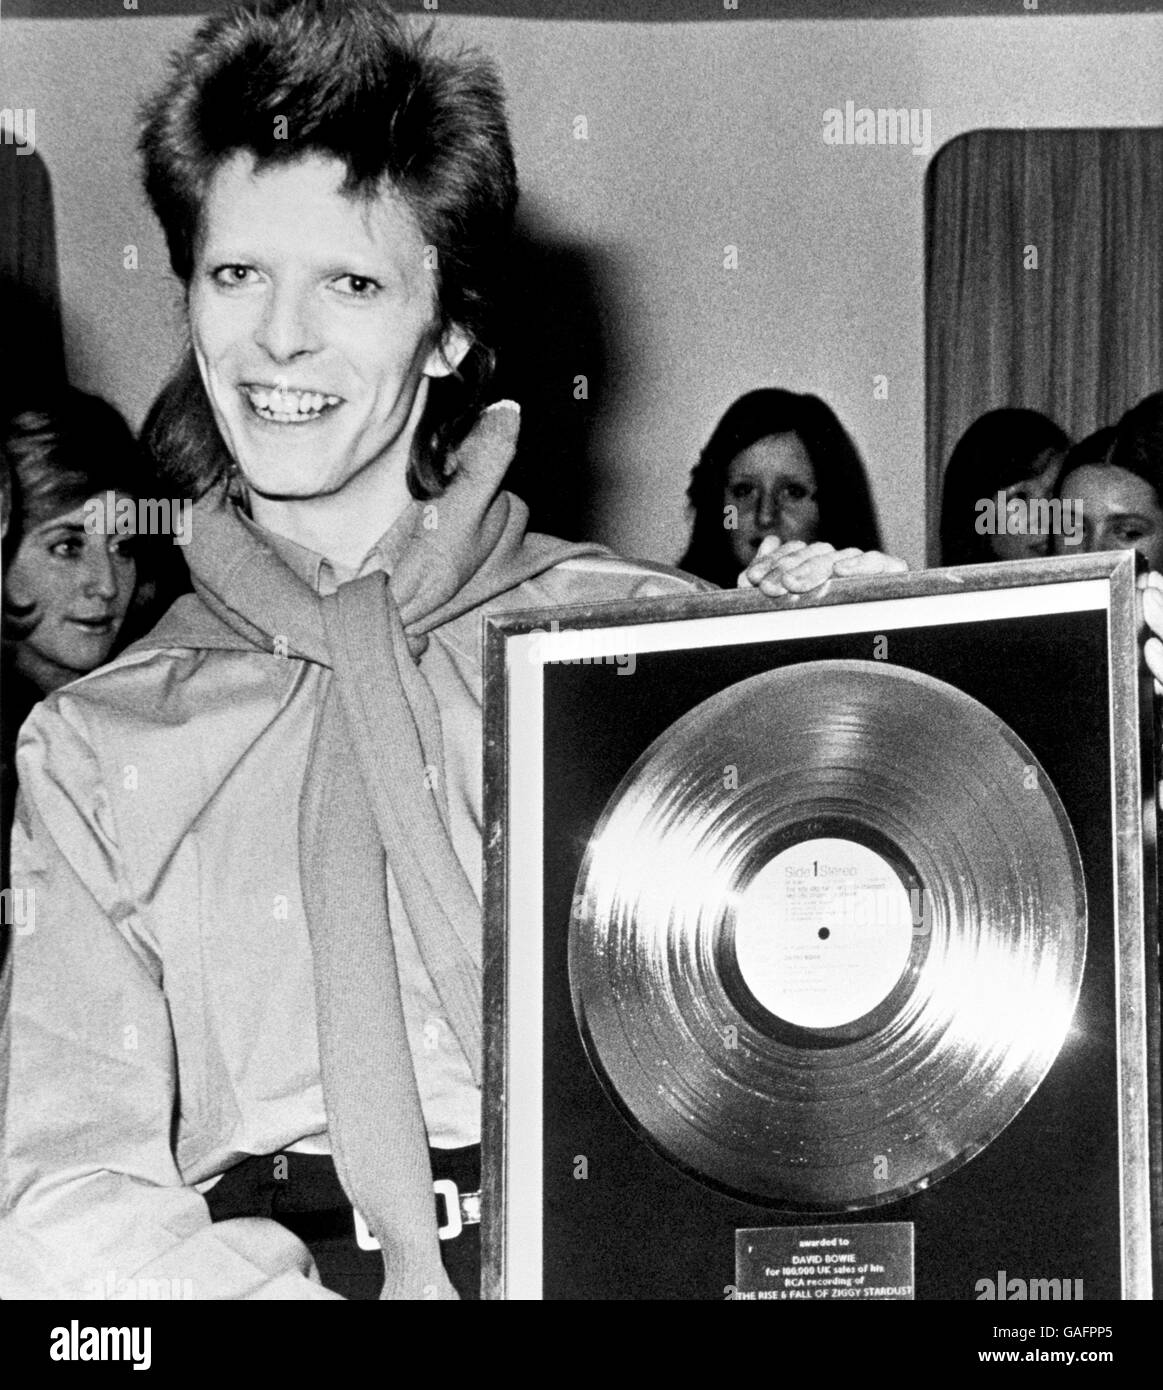 Musica - David Bowie - 1973. L'artista solista David Bowie con il suo disco d'oro. Foto Stock